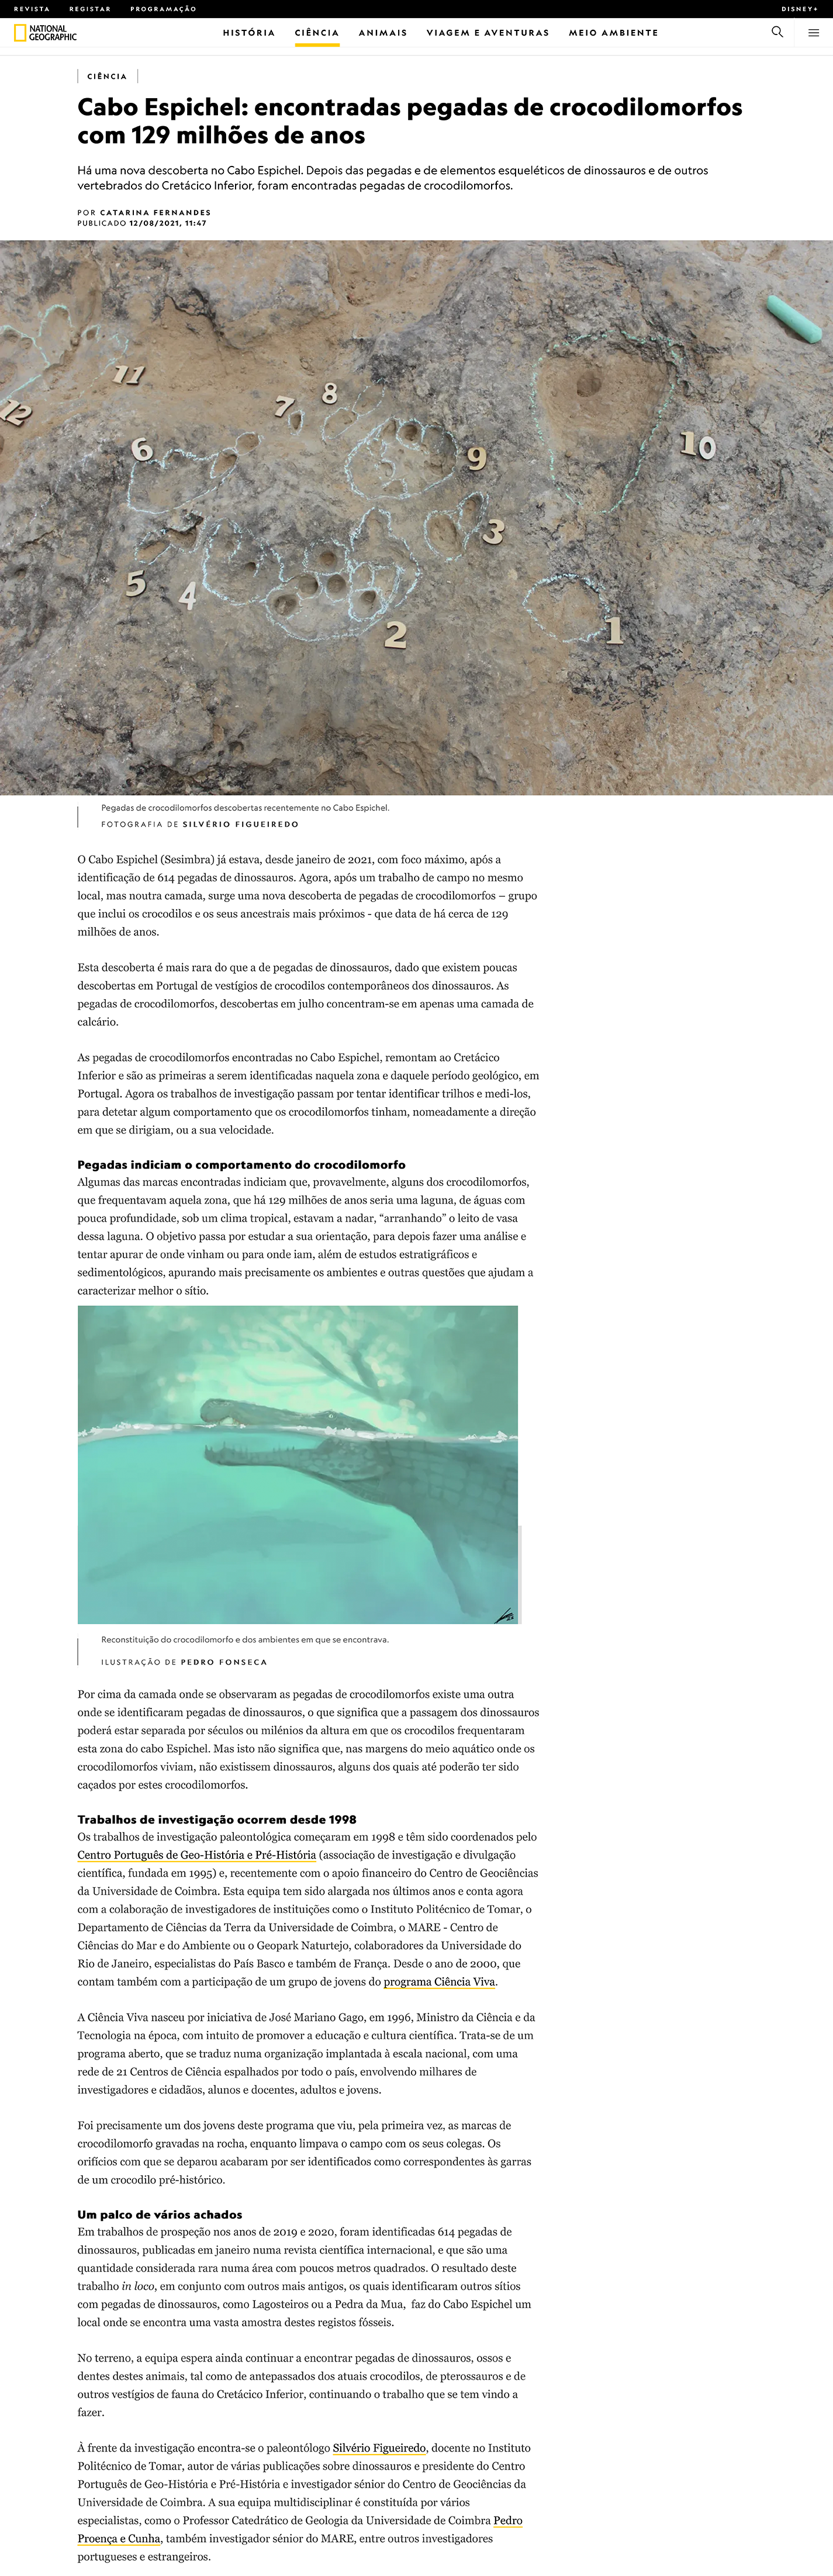 Notícia da National Geographic - Cabo Espichel: encontradas pegadas de crocodilomorfos com 129 milhões de anos - Edição online de 12 de Agosto de 2021